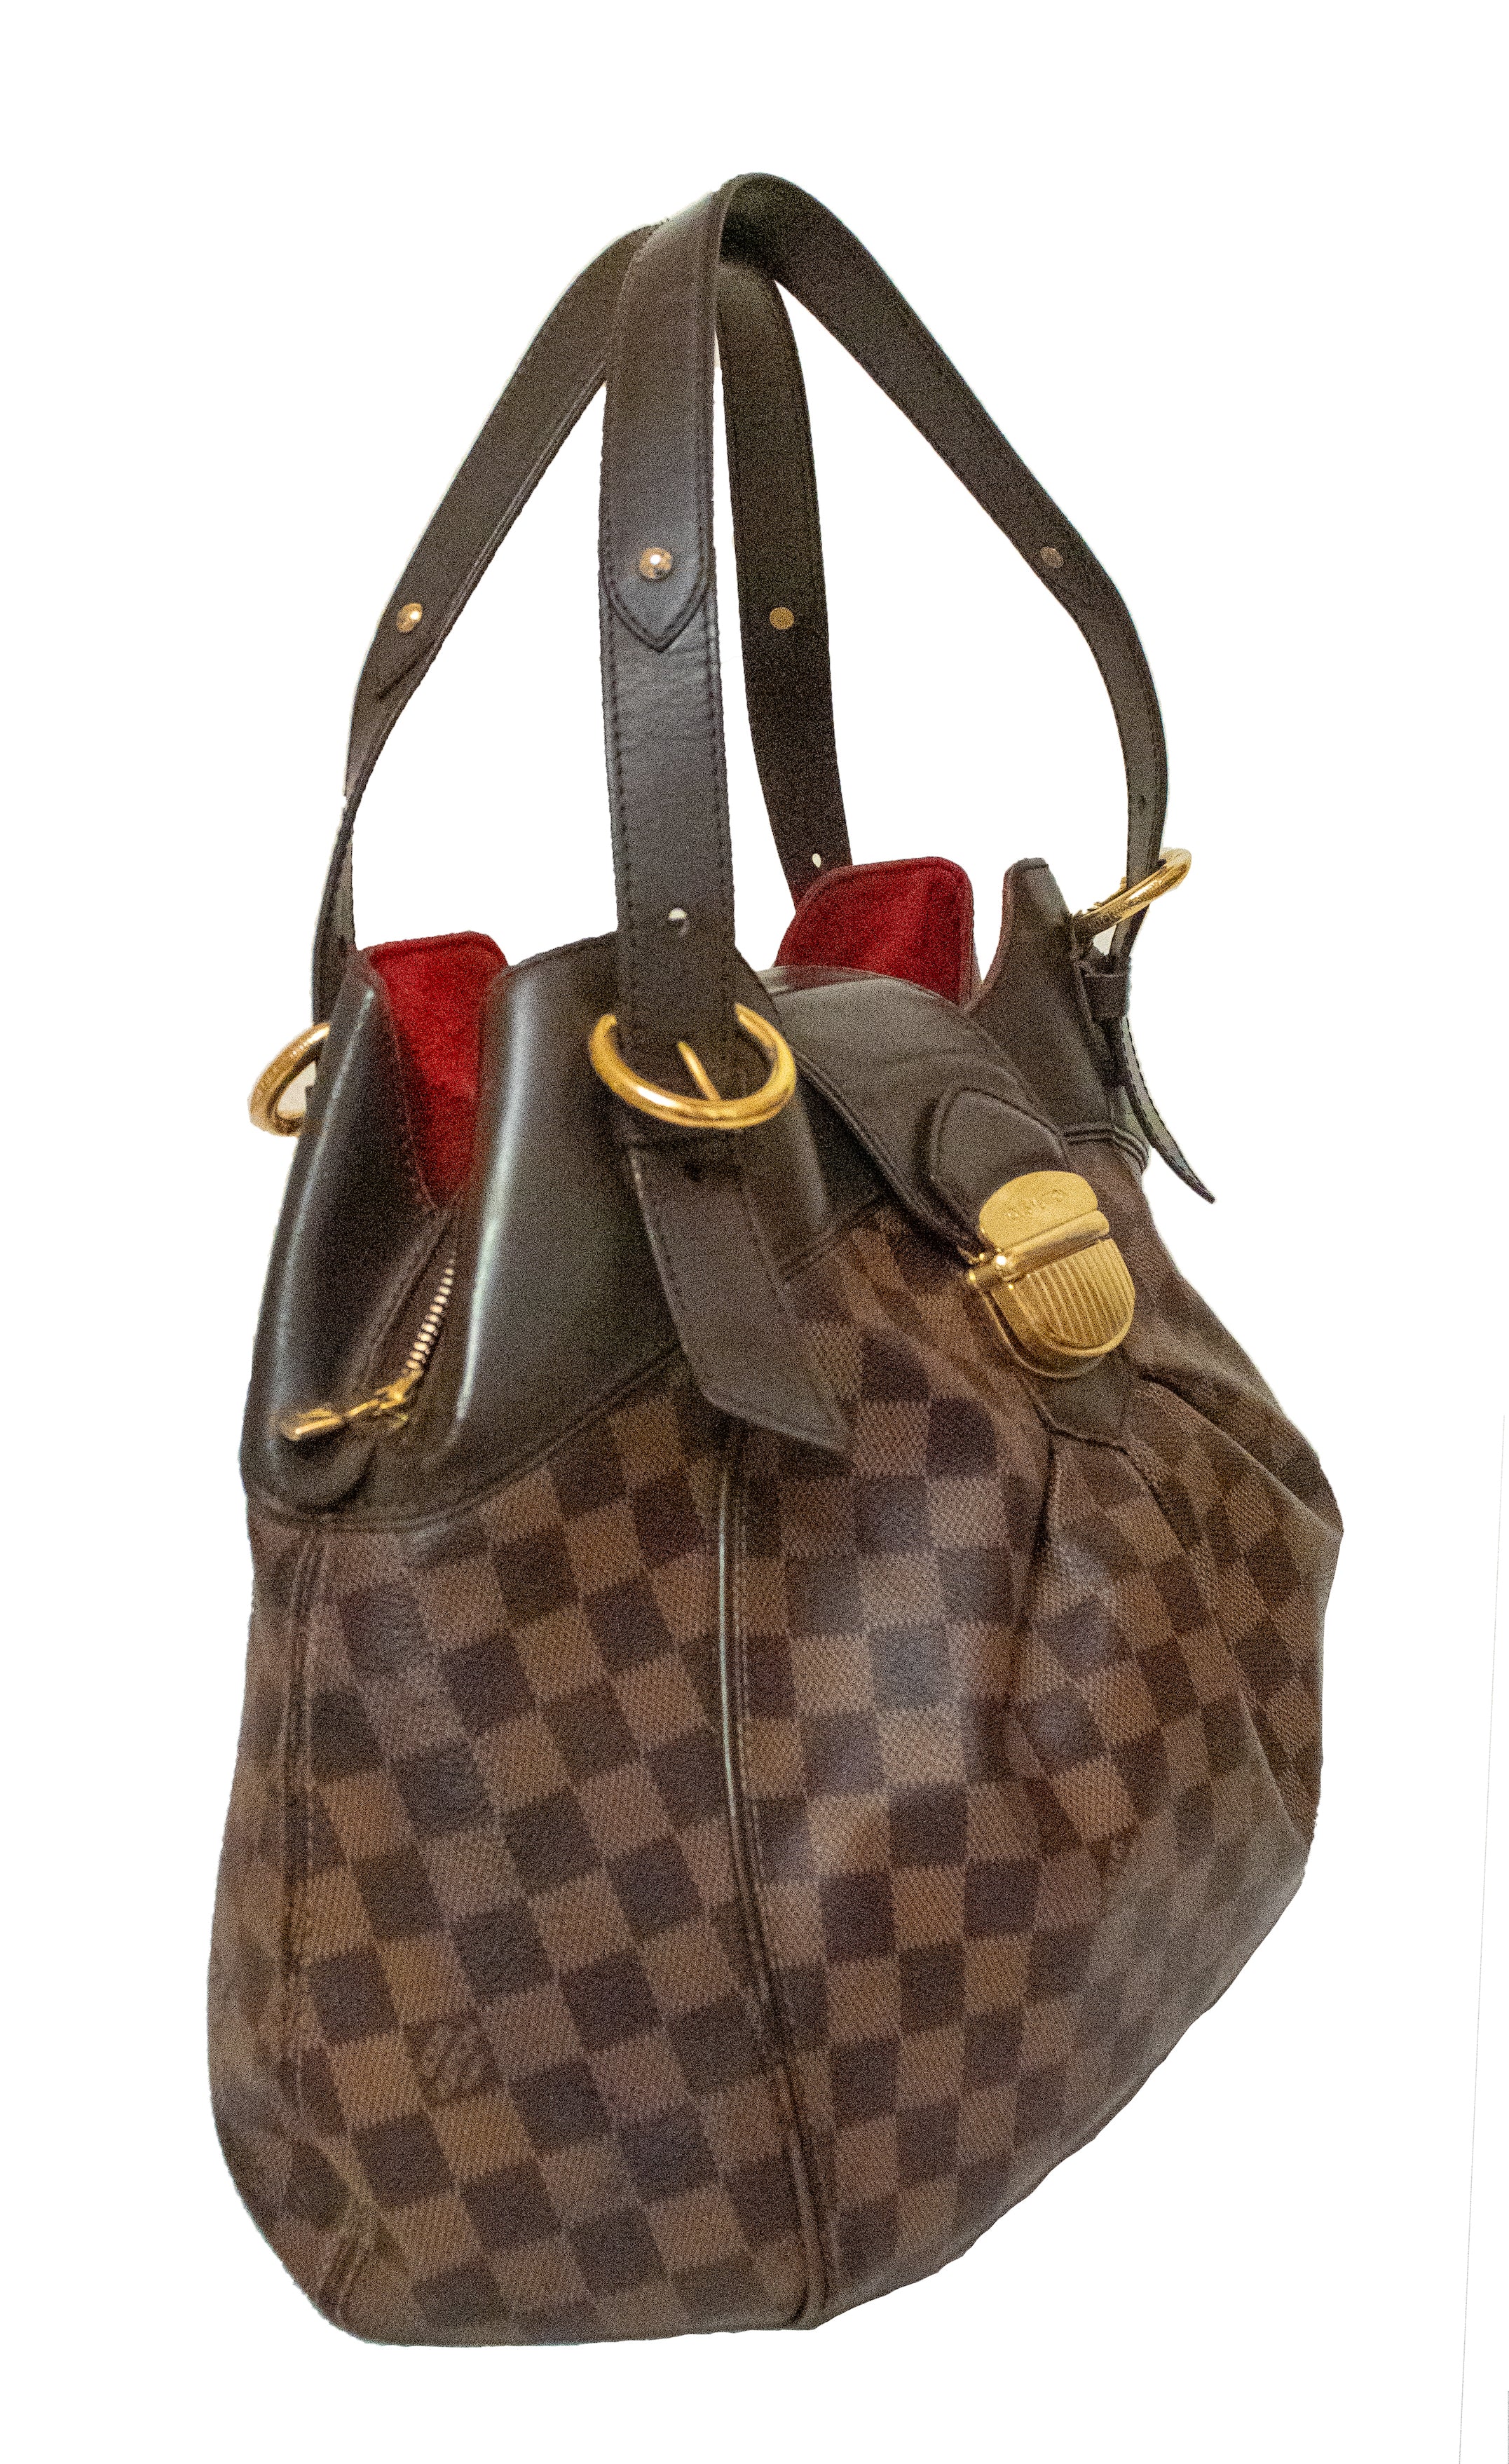 Louis VUITTON - SISTINA bag in ebony checkerboard canvas…